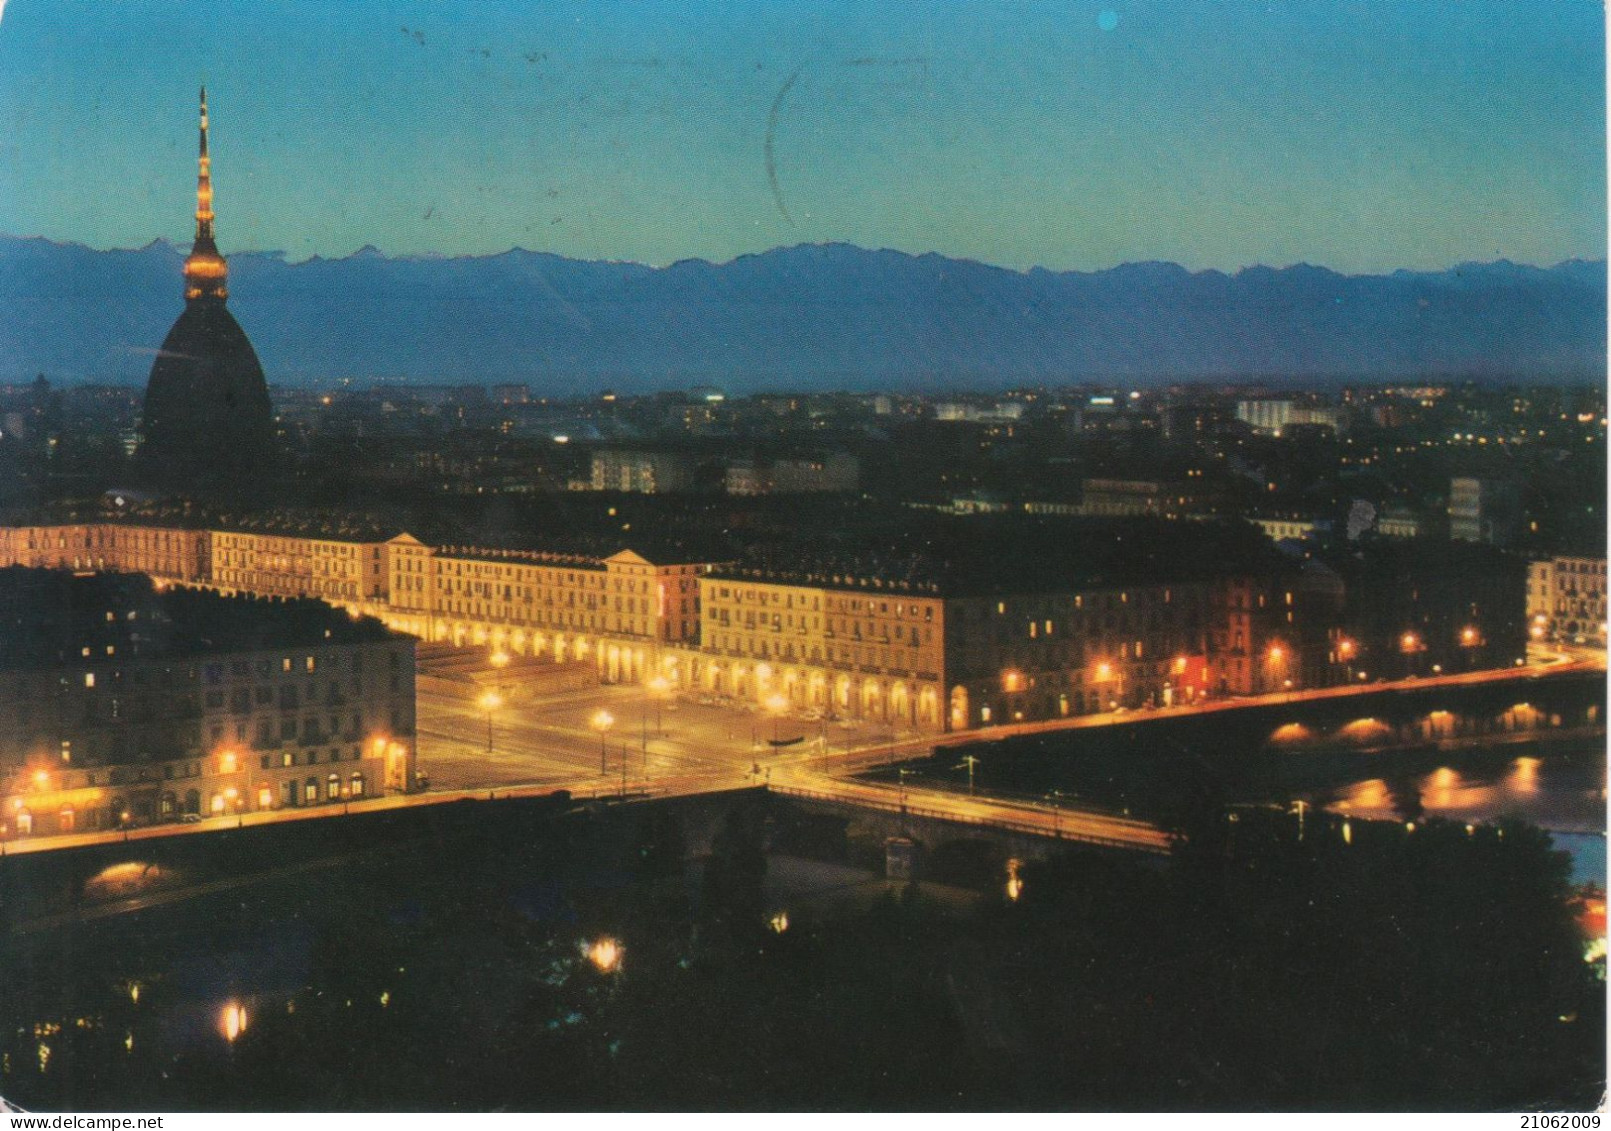 TORINO - PANORAMA - PIAZZA VITTORIO VENETO E MOLE ANTONELLIANA, VISTE DAL MONTE DEI CAPPUCCINI - NOTTURNO - V1969 - Panoramic Views